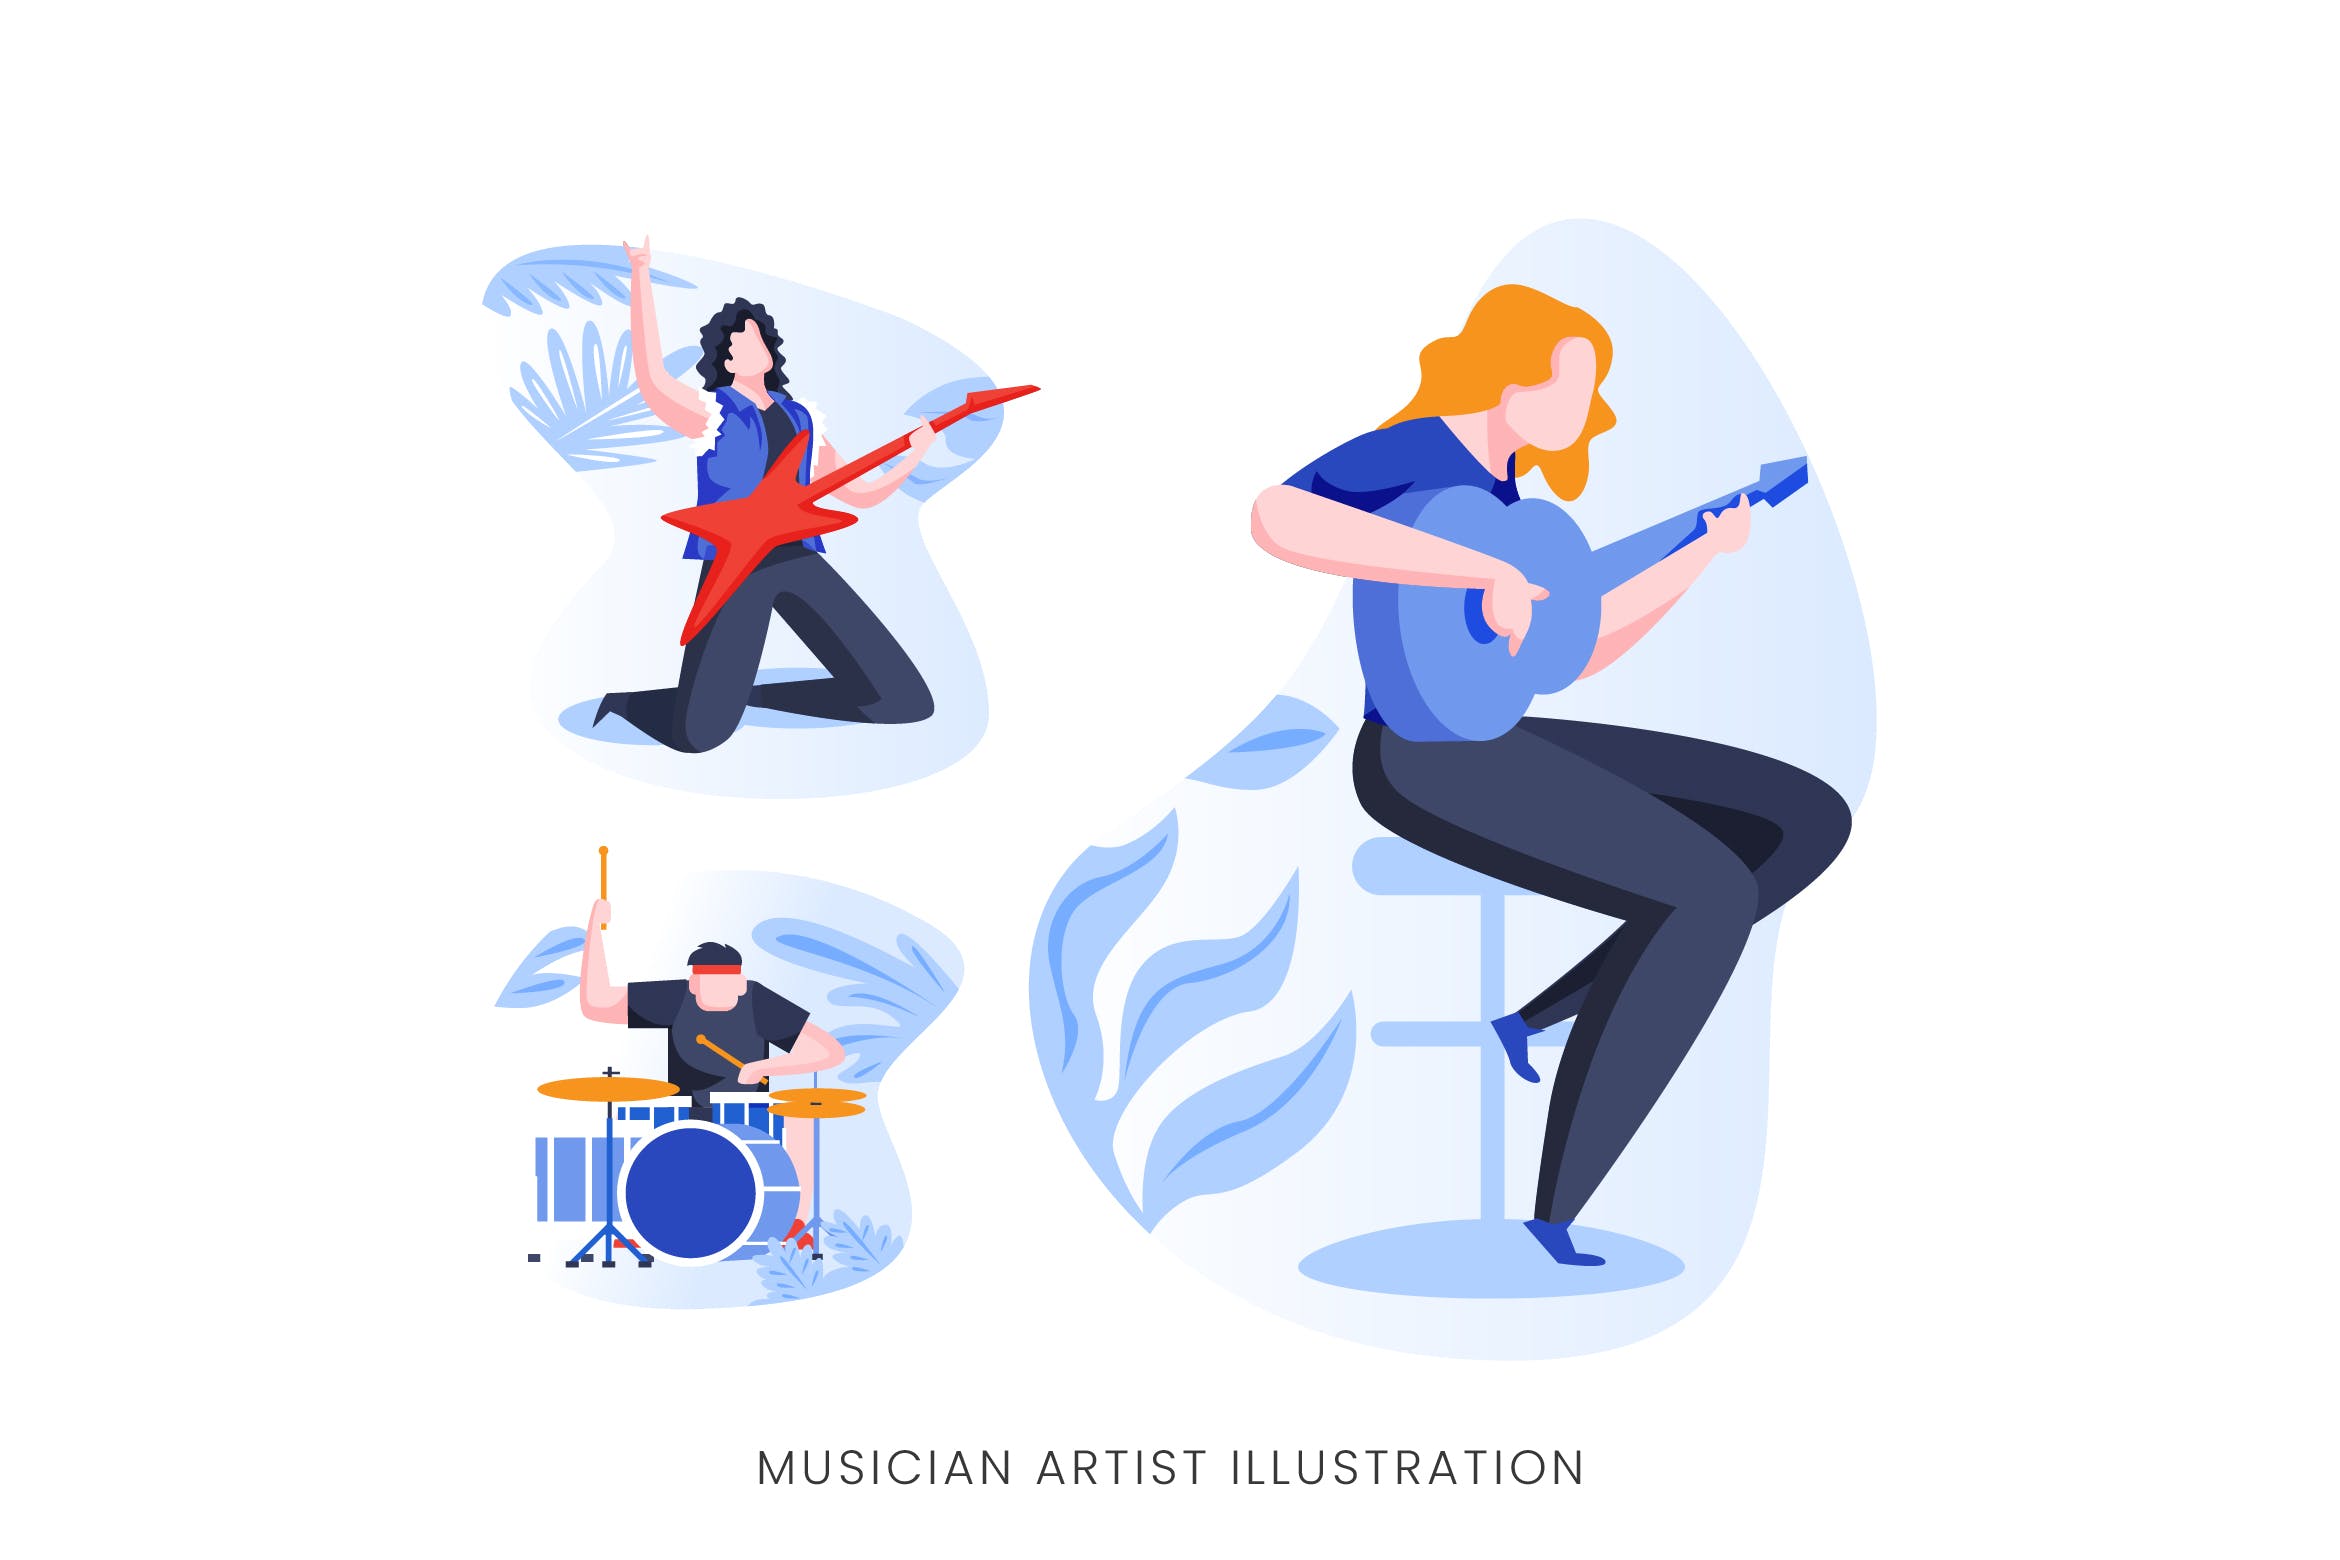 音乐家艺术家人物形象矢量手绘非凡图库精选设计素材 Musician Artist Vector Character Set插图